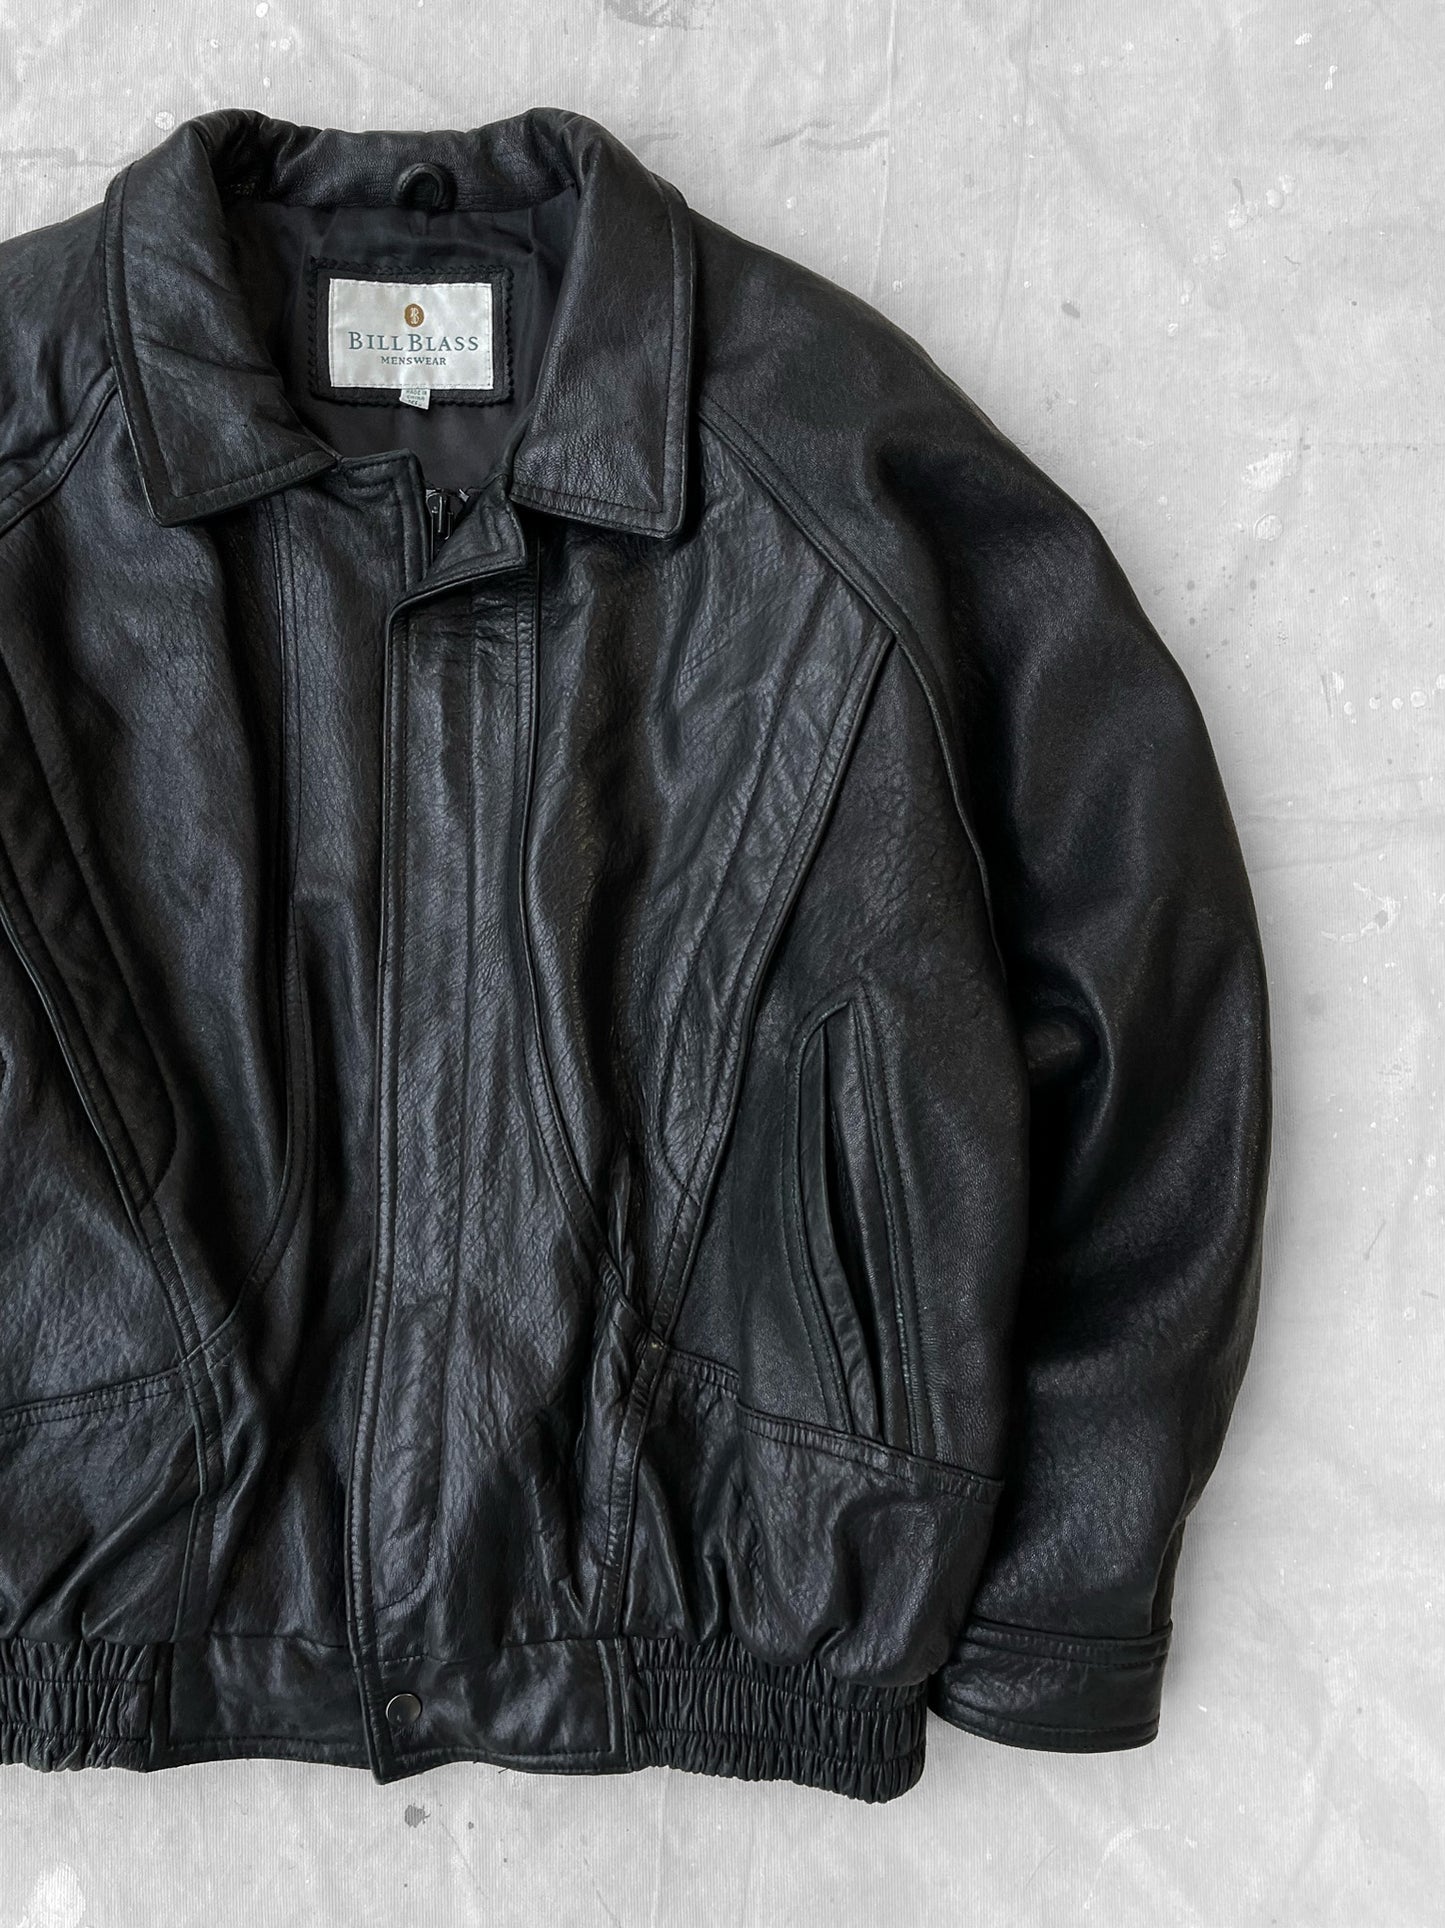 Bill Blass Leather Jacket—[XL]